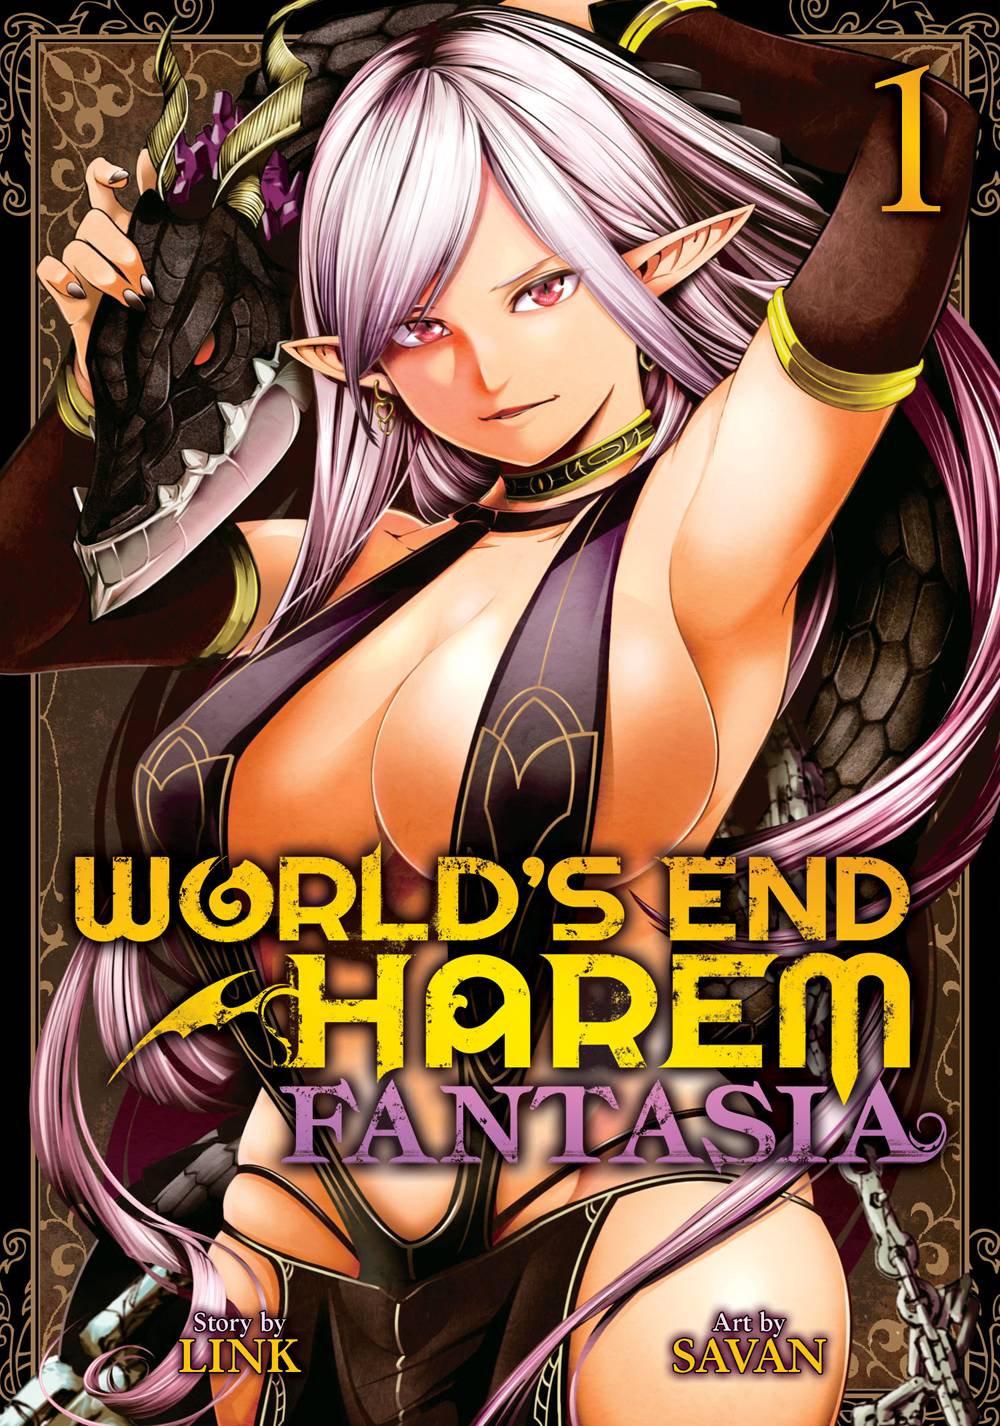 Worlds End Harem GN Vol 11